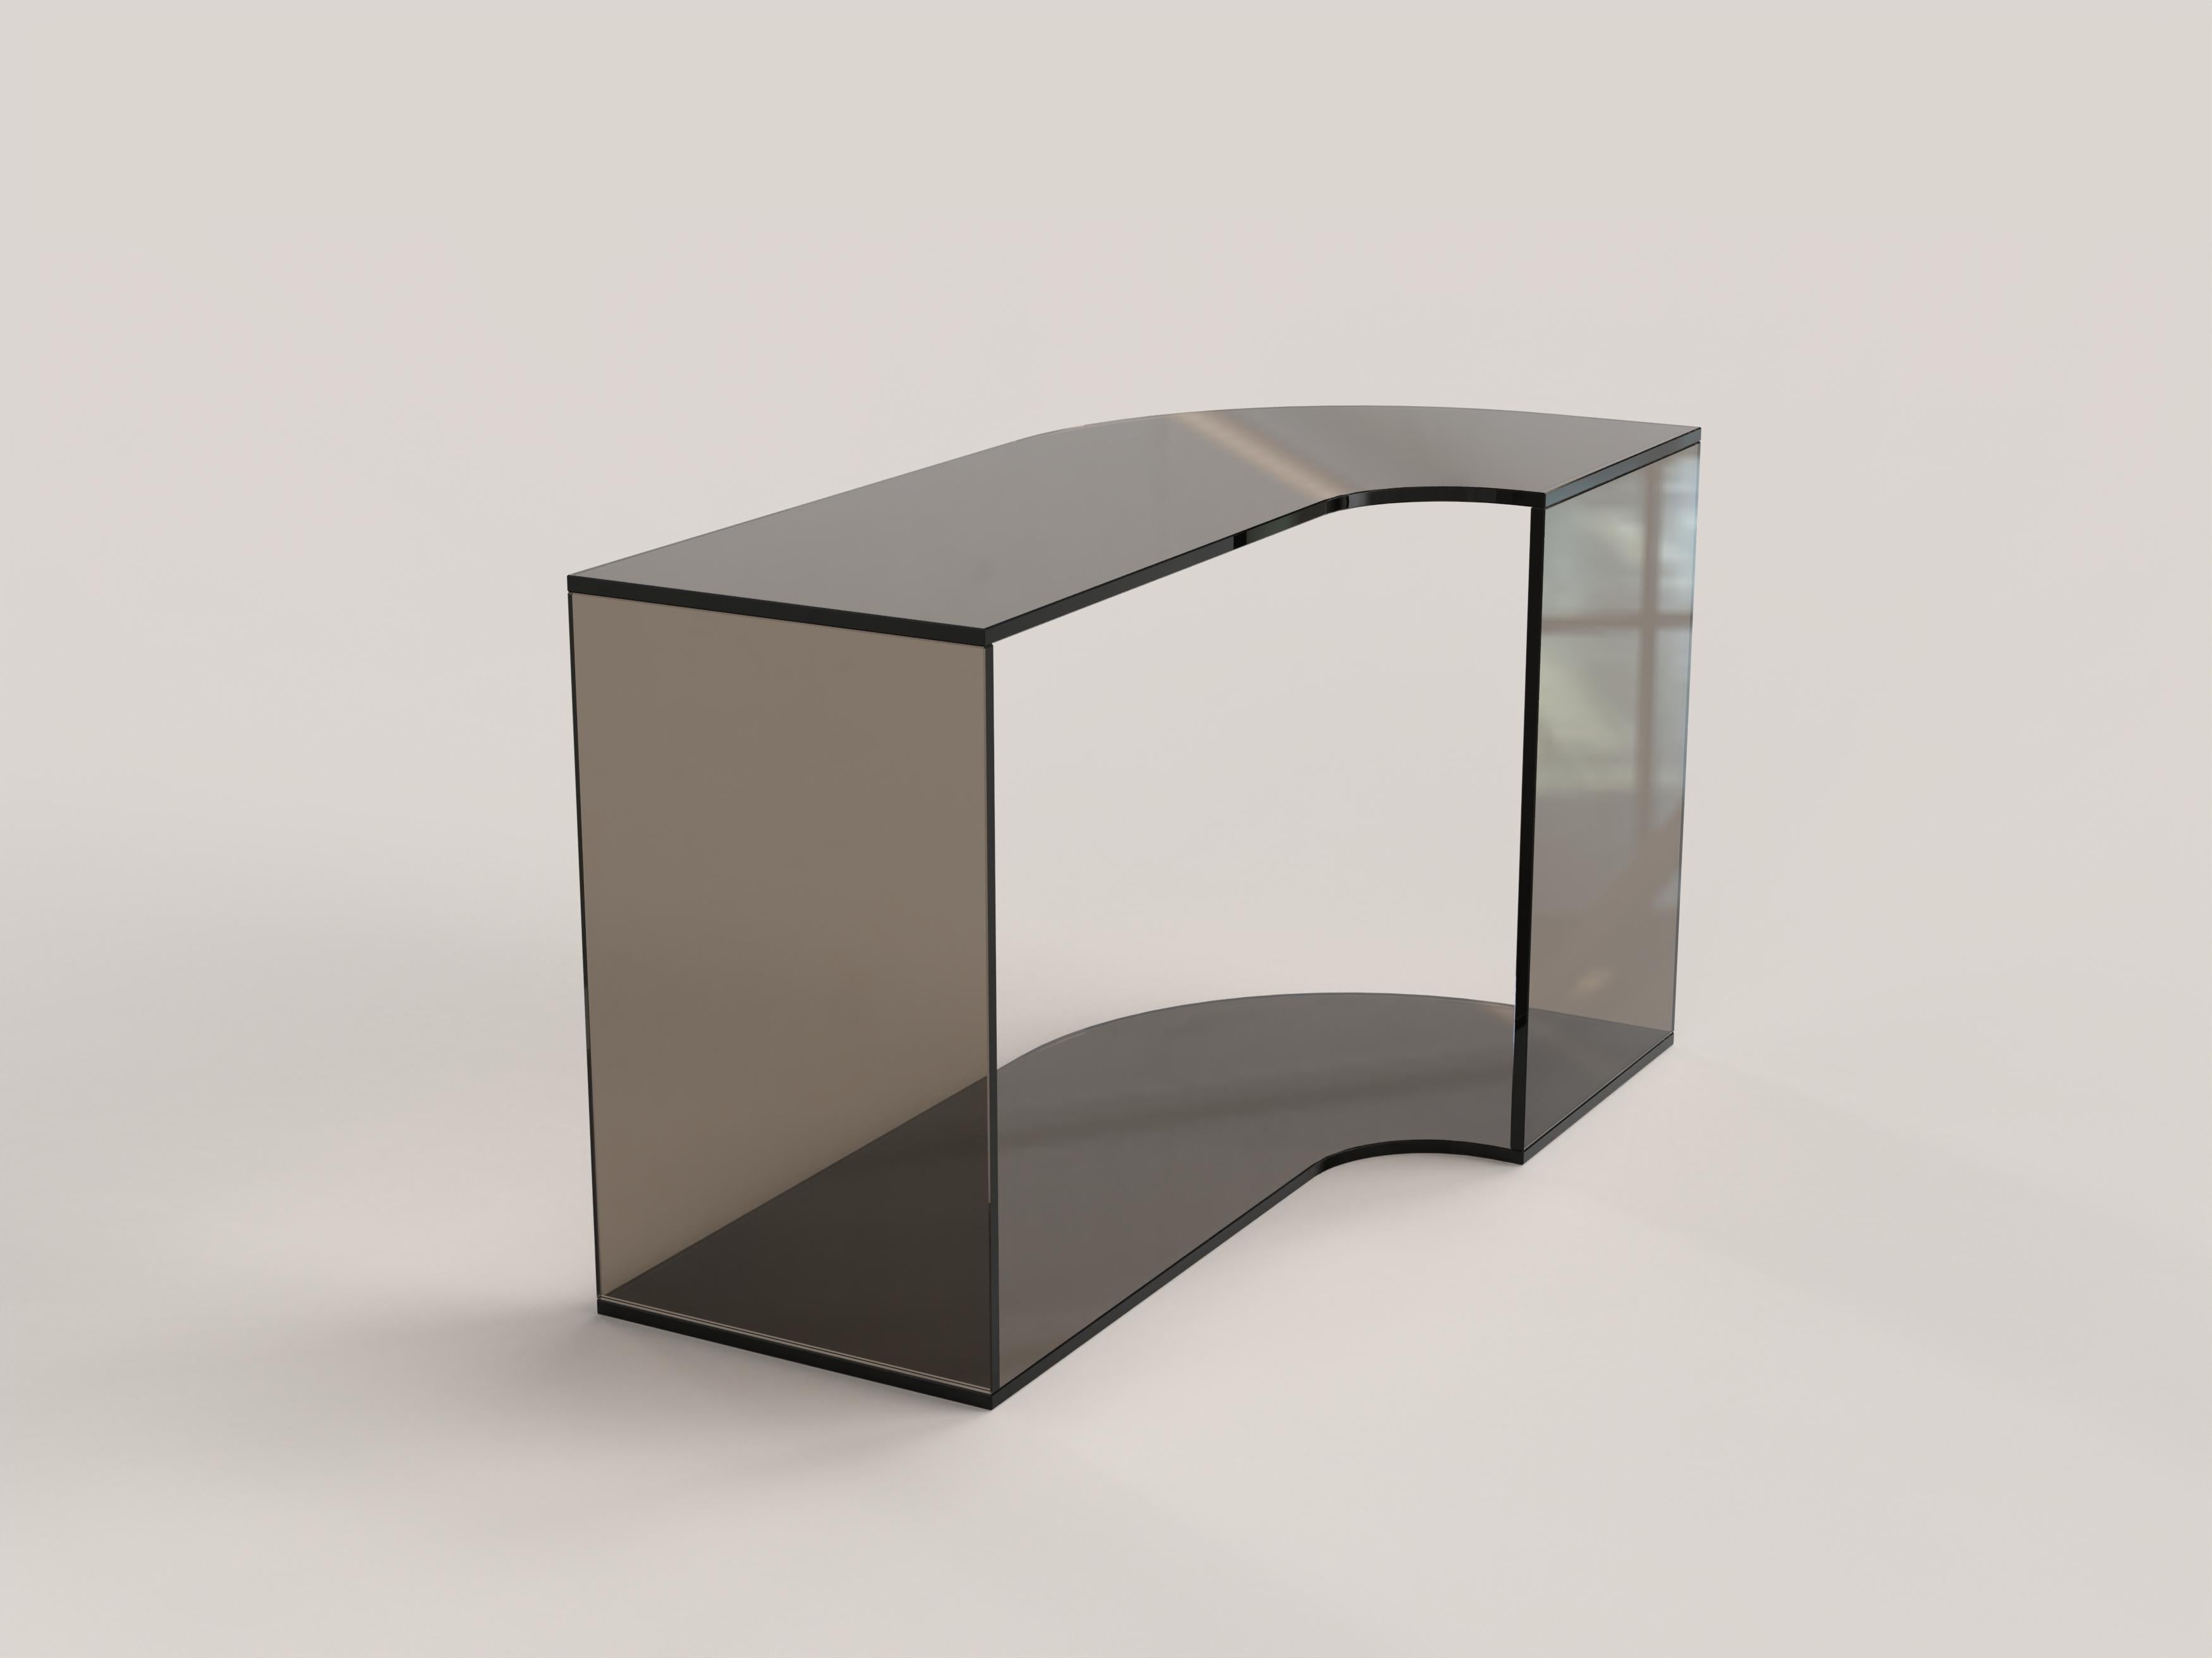 Contemporary Limited Edition Bronze Glass Table, Quarter V2 by Edizione Limitata For Sale 1